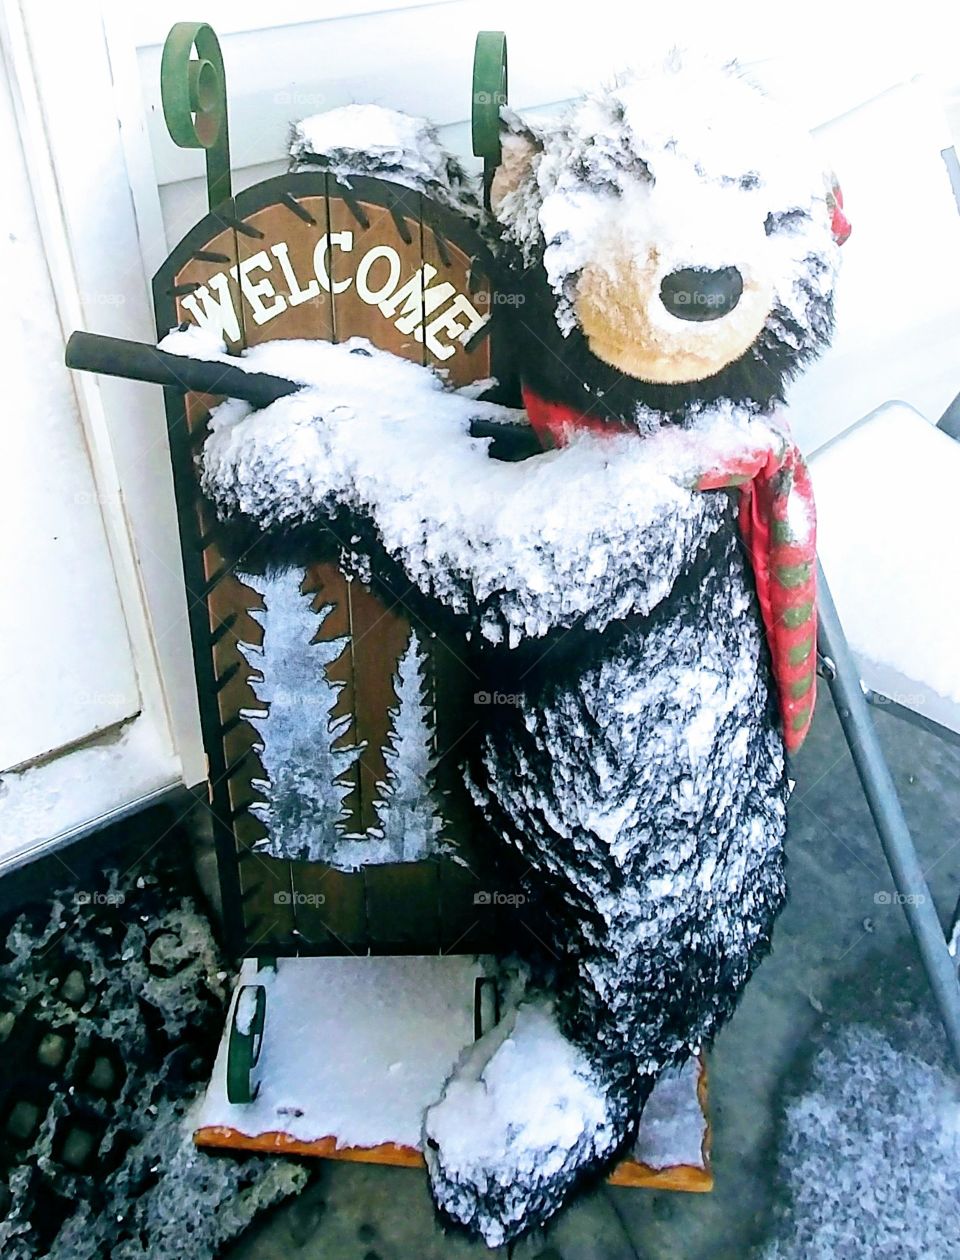 Our door bear got snowed!